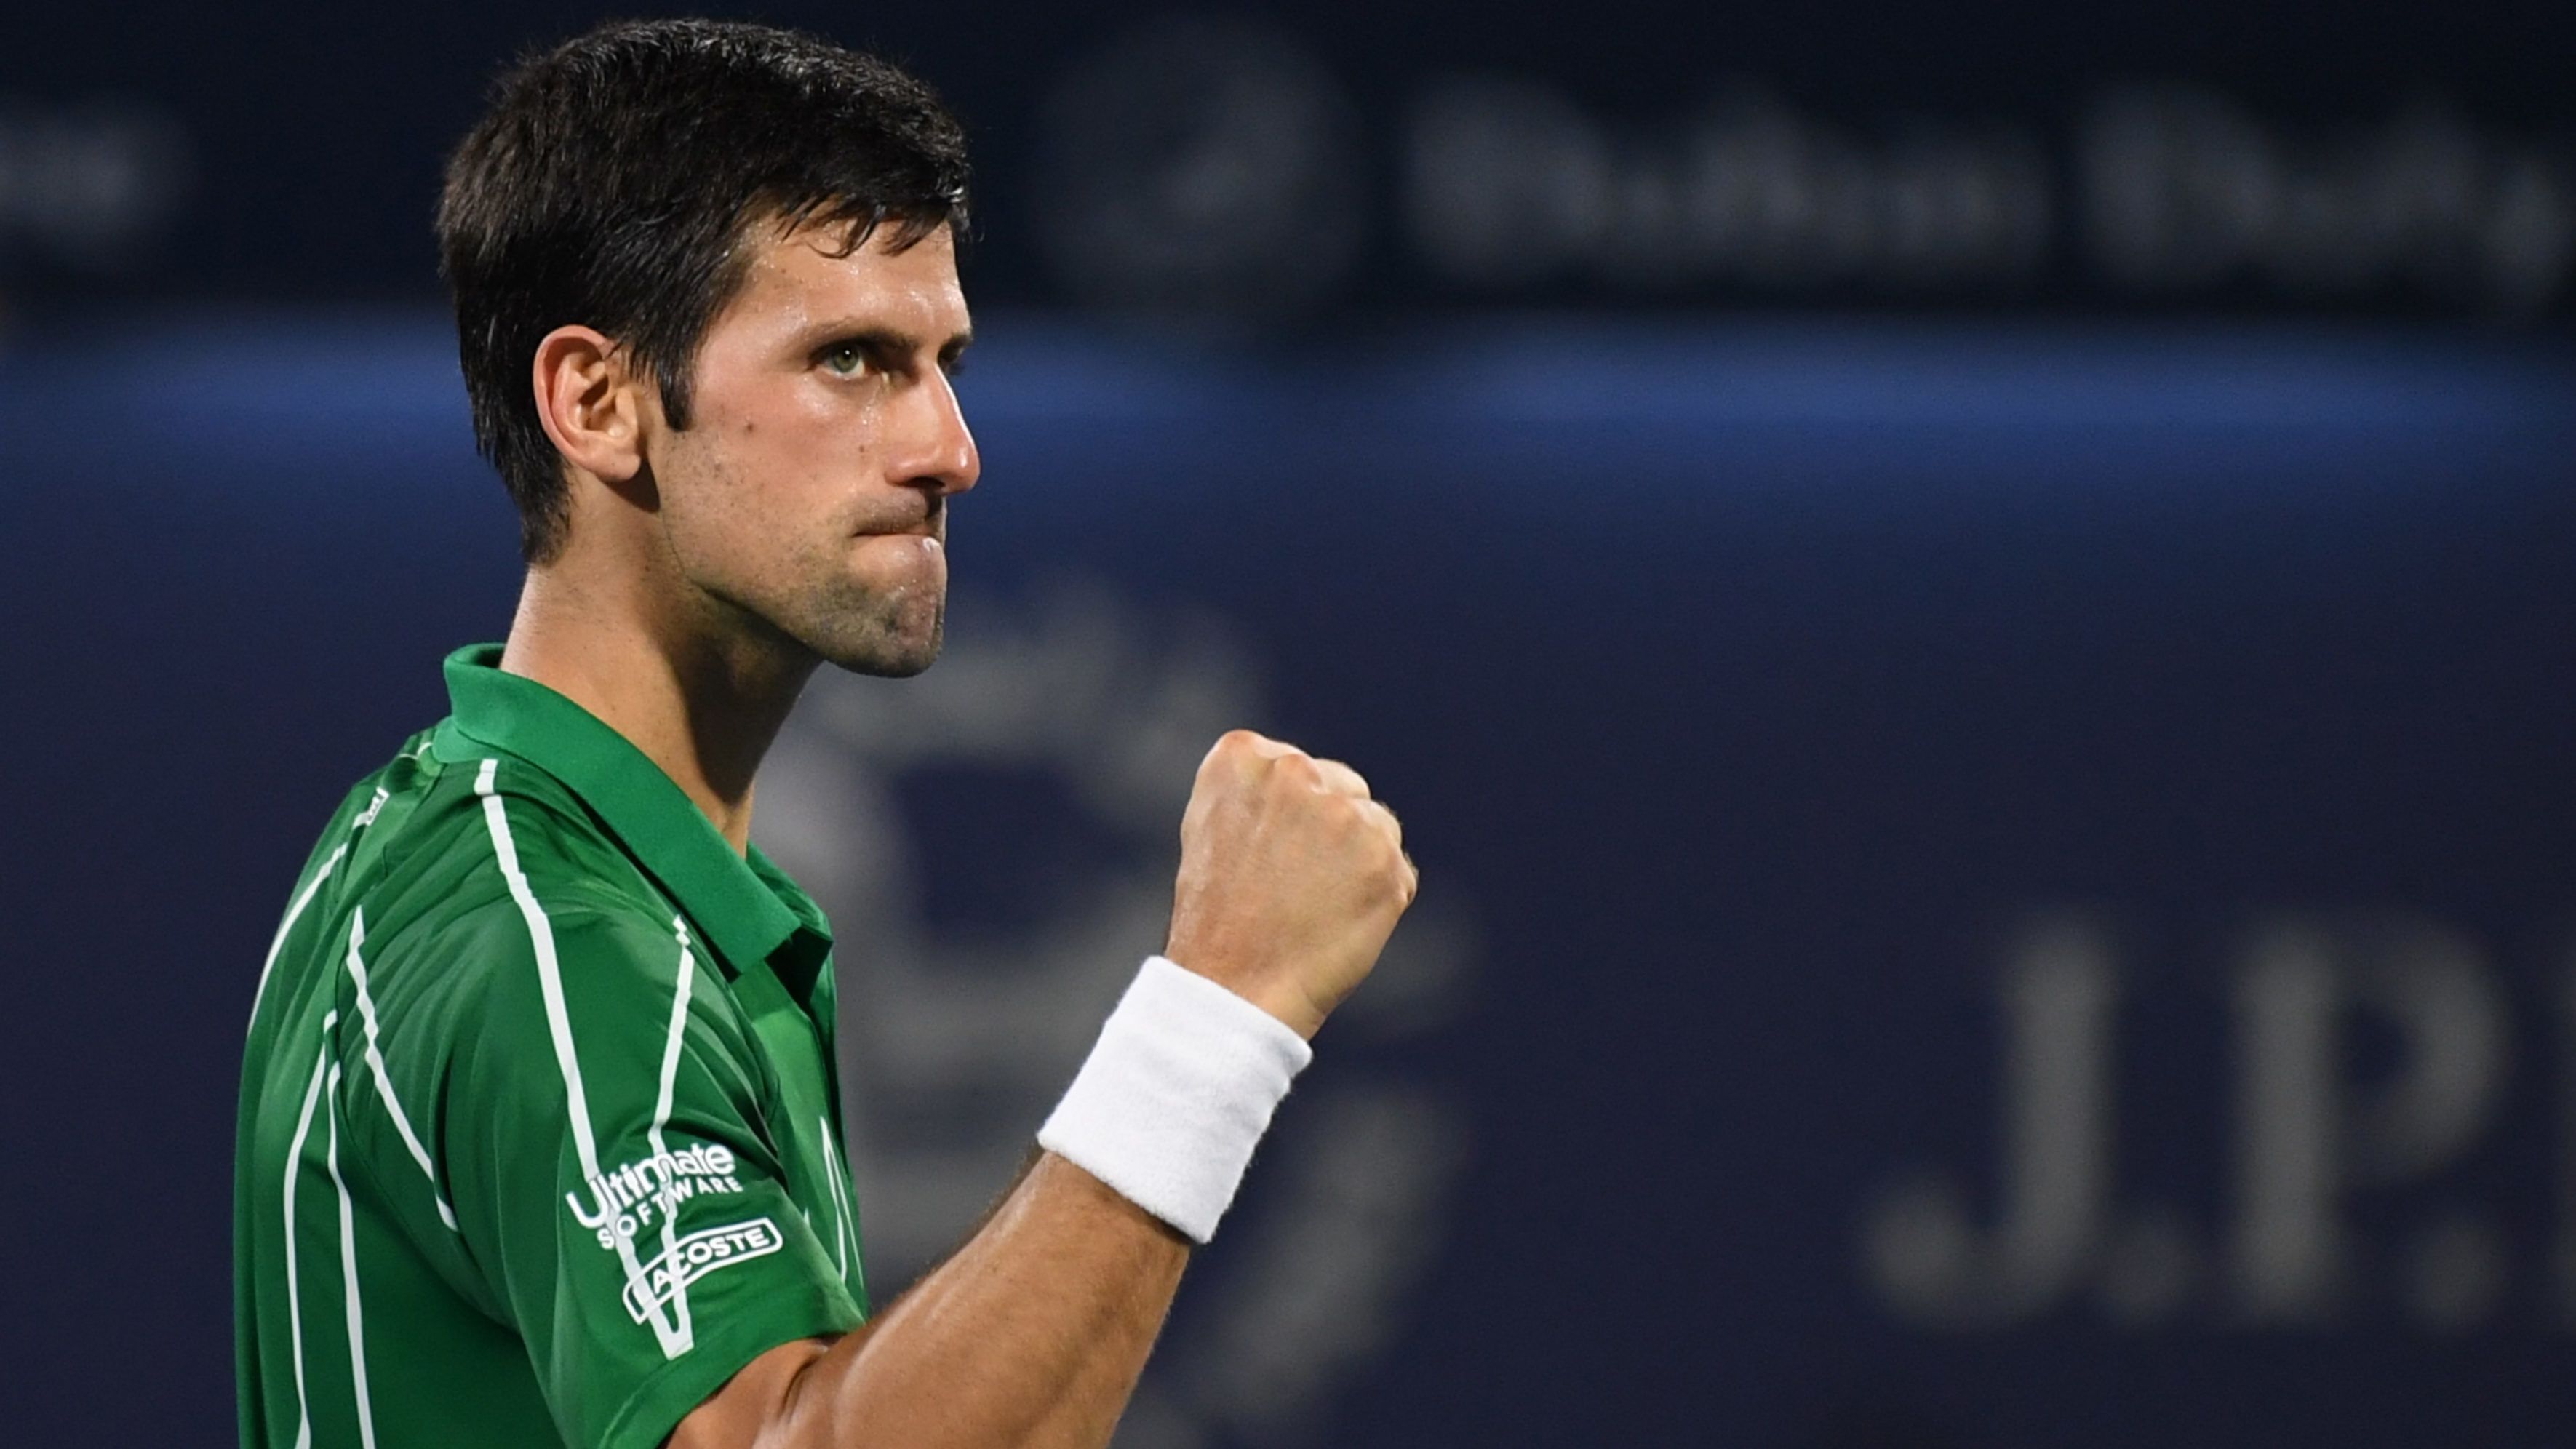 Novak Djokovic egymillió eurót költ a koronavírus elleni harcra